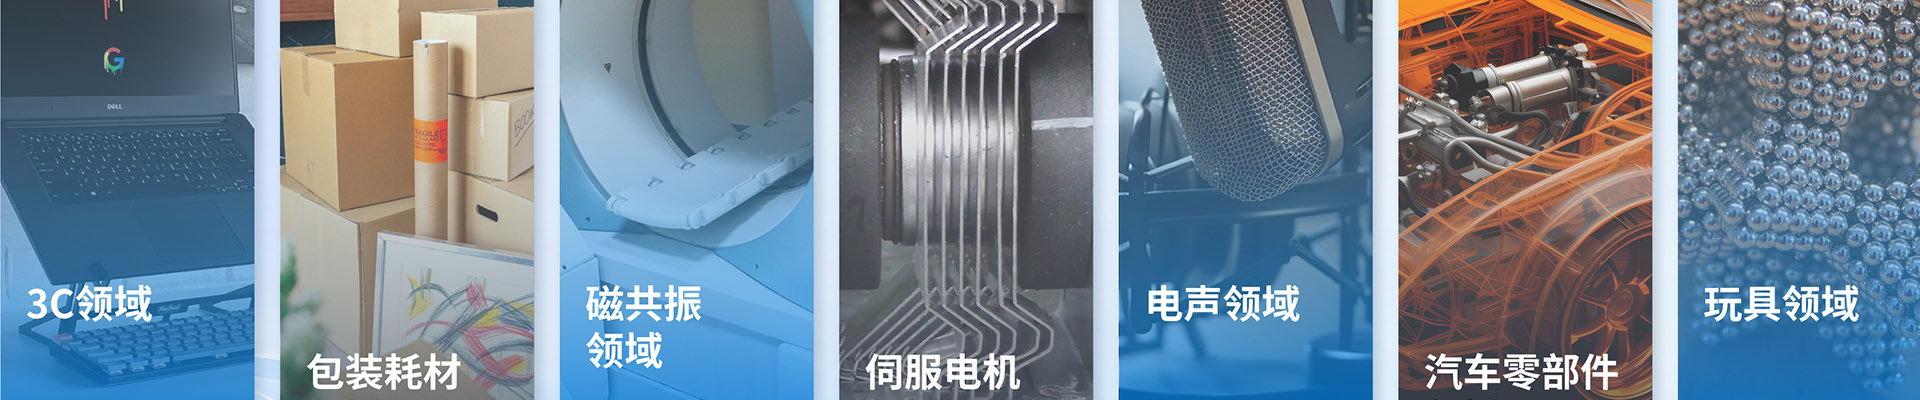 瓦型铁氧体-铁氧体系列-宁波允亿磁业科技有限公司